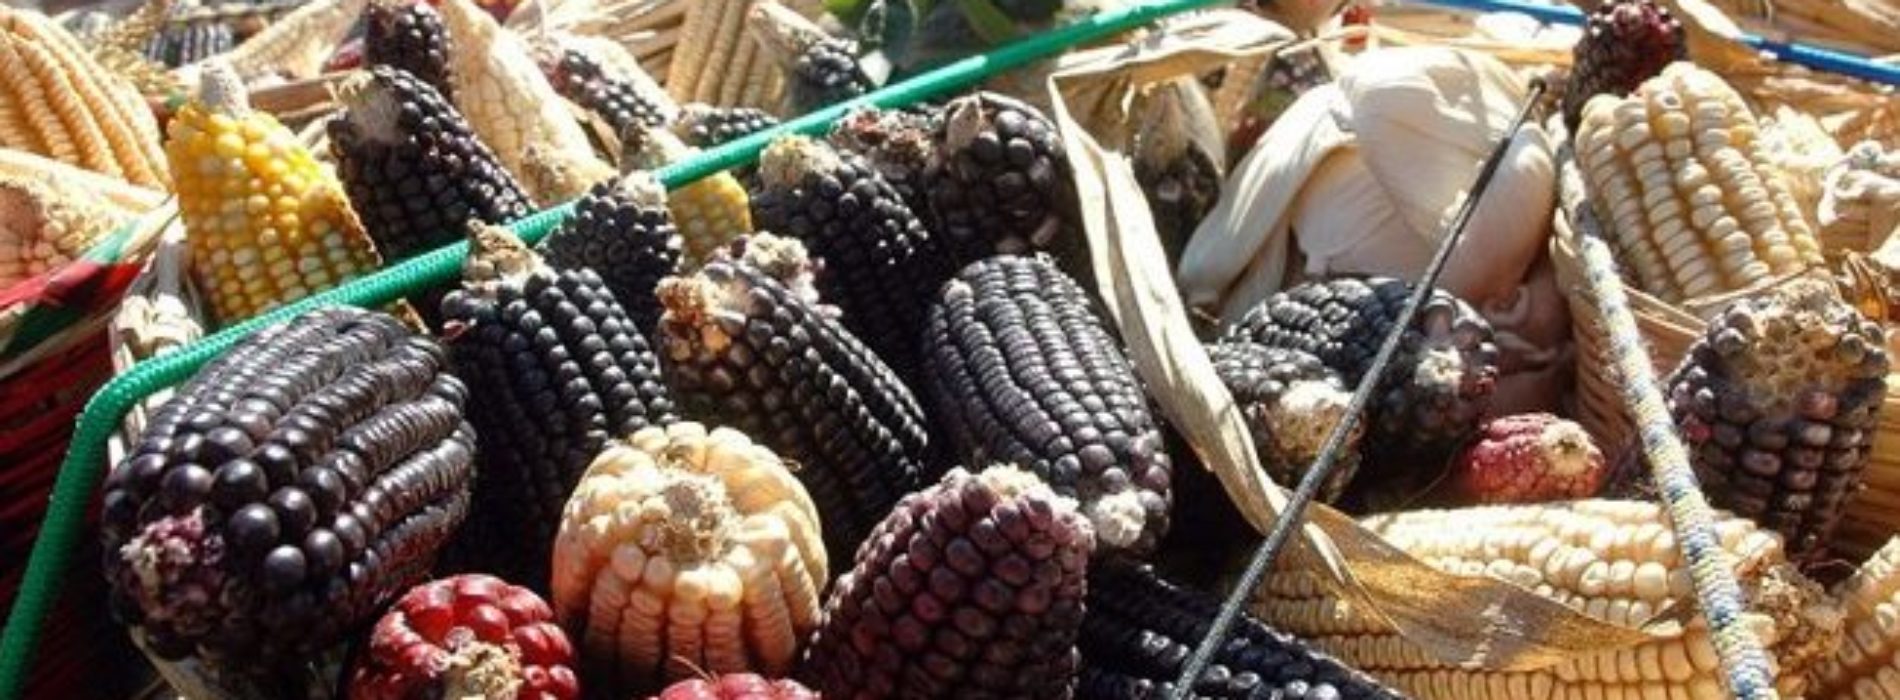 Sagarpa deberá informar sobre el caso de presunta piratería
de maíz mixe en Oaxaca